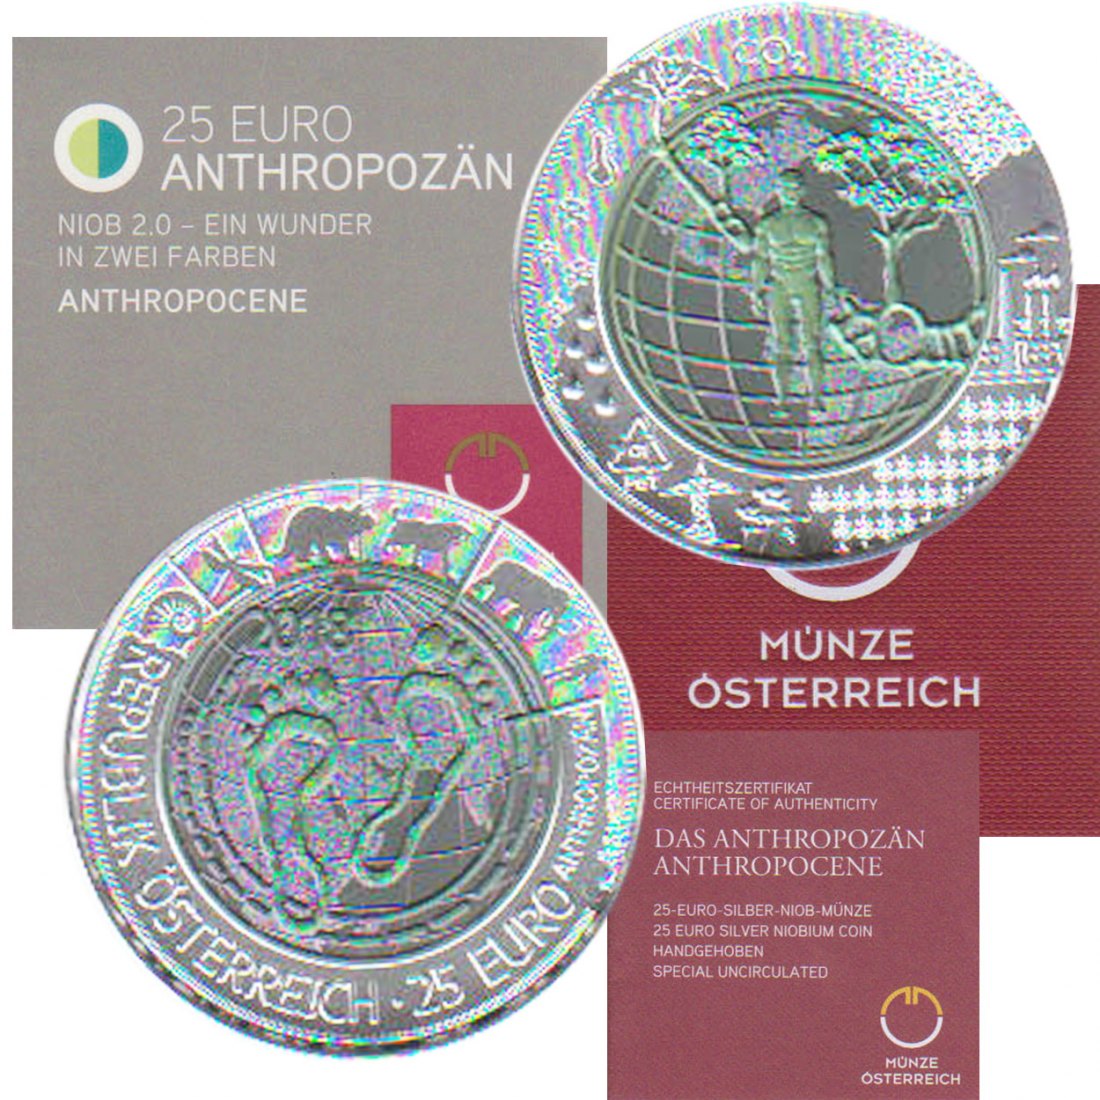  Offiz. 25-Euro-Silber-Niob-Münze Österreich *Das Anthropozän* 2018 *hgh* max 65.000St!   